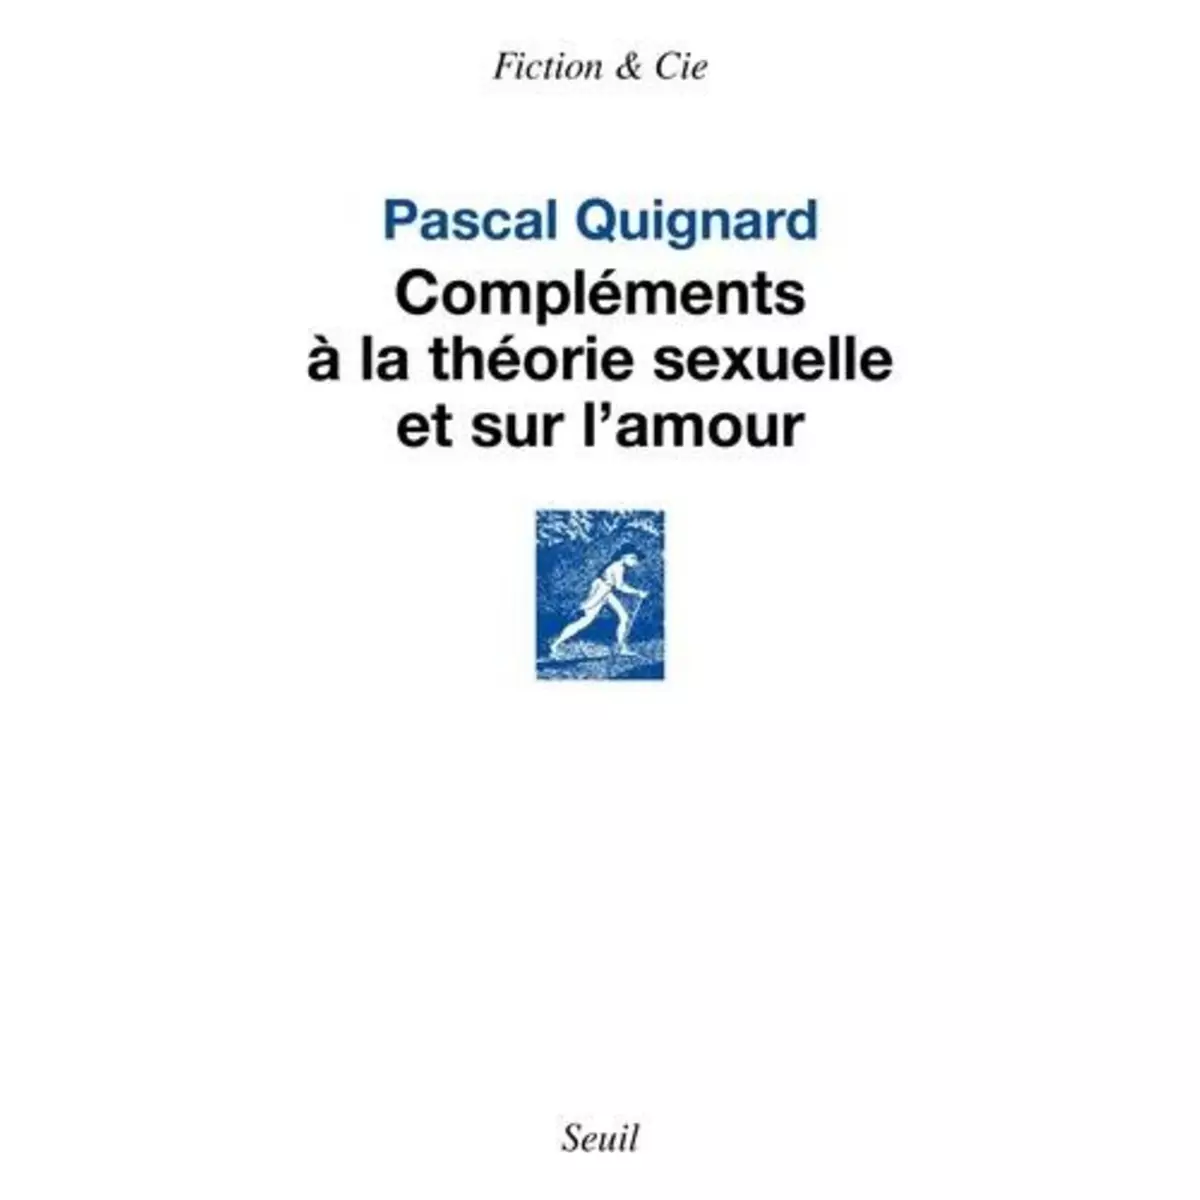  COMPLEMENTS A LA THEORIE SEXUELLE ET SUR L'AMOUR, Quignard Pascal